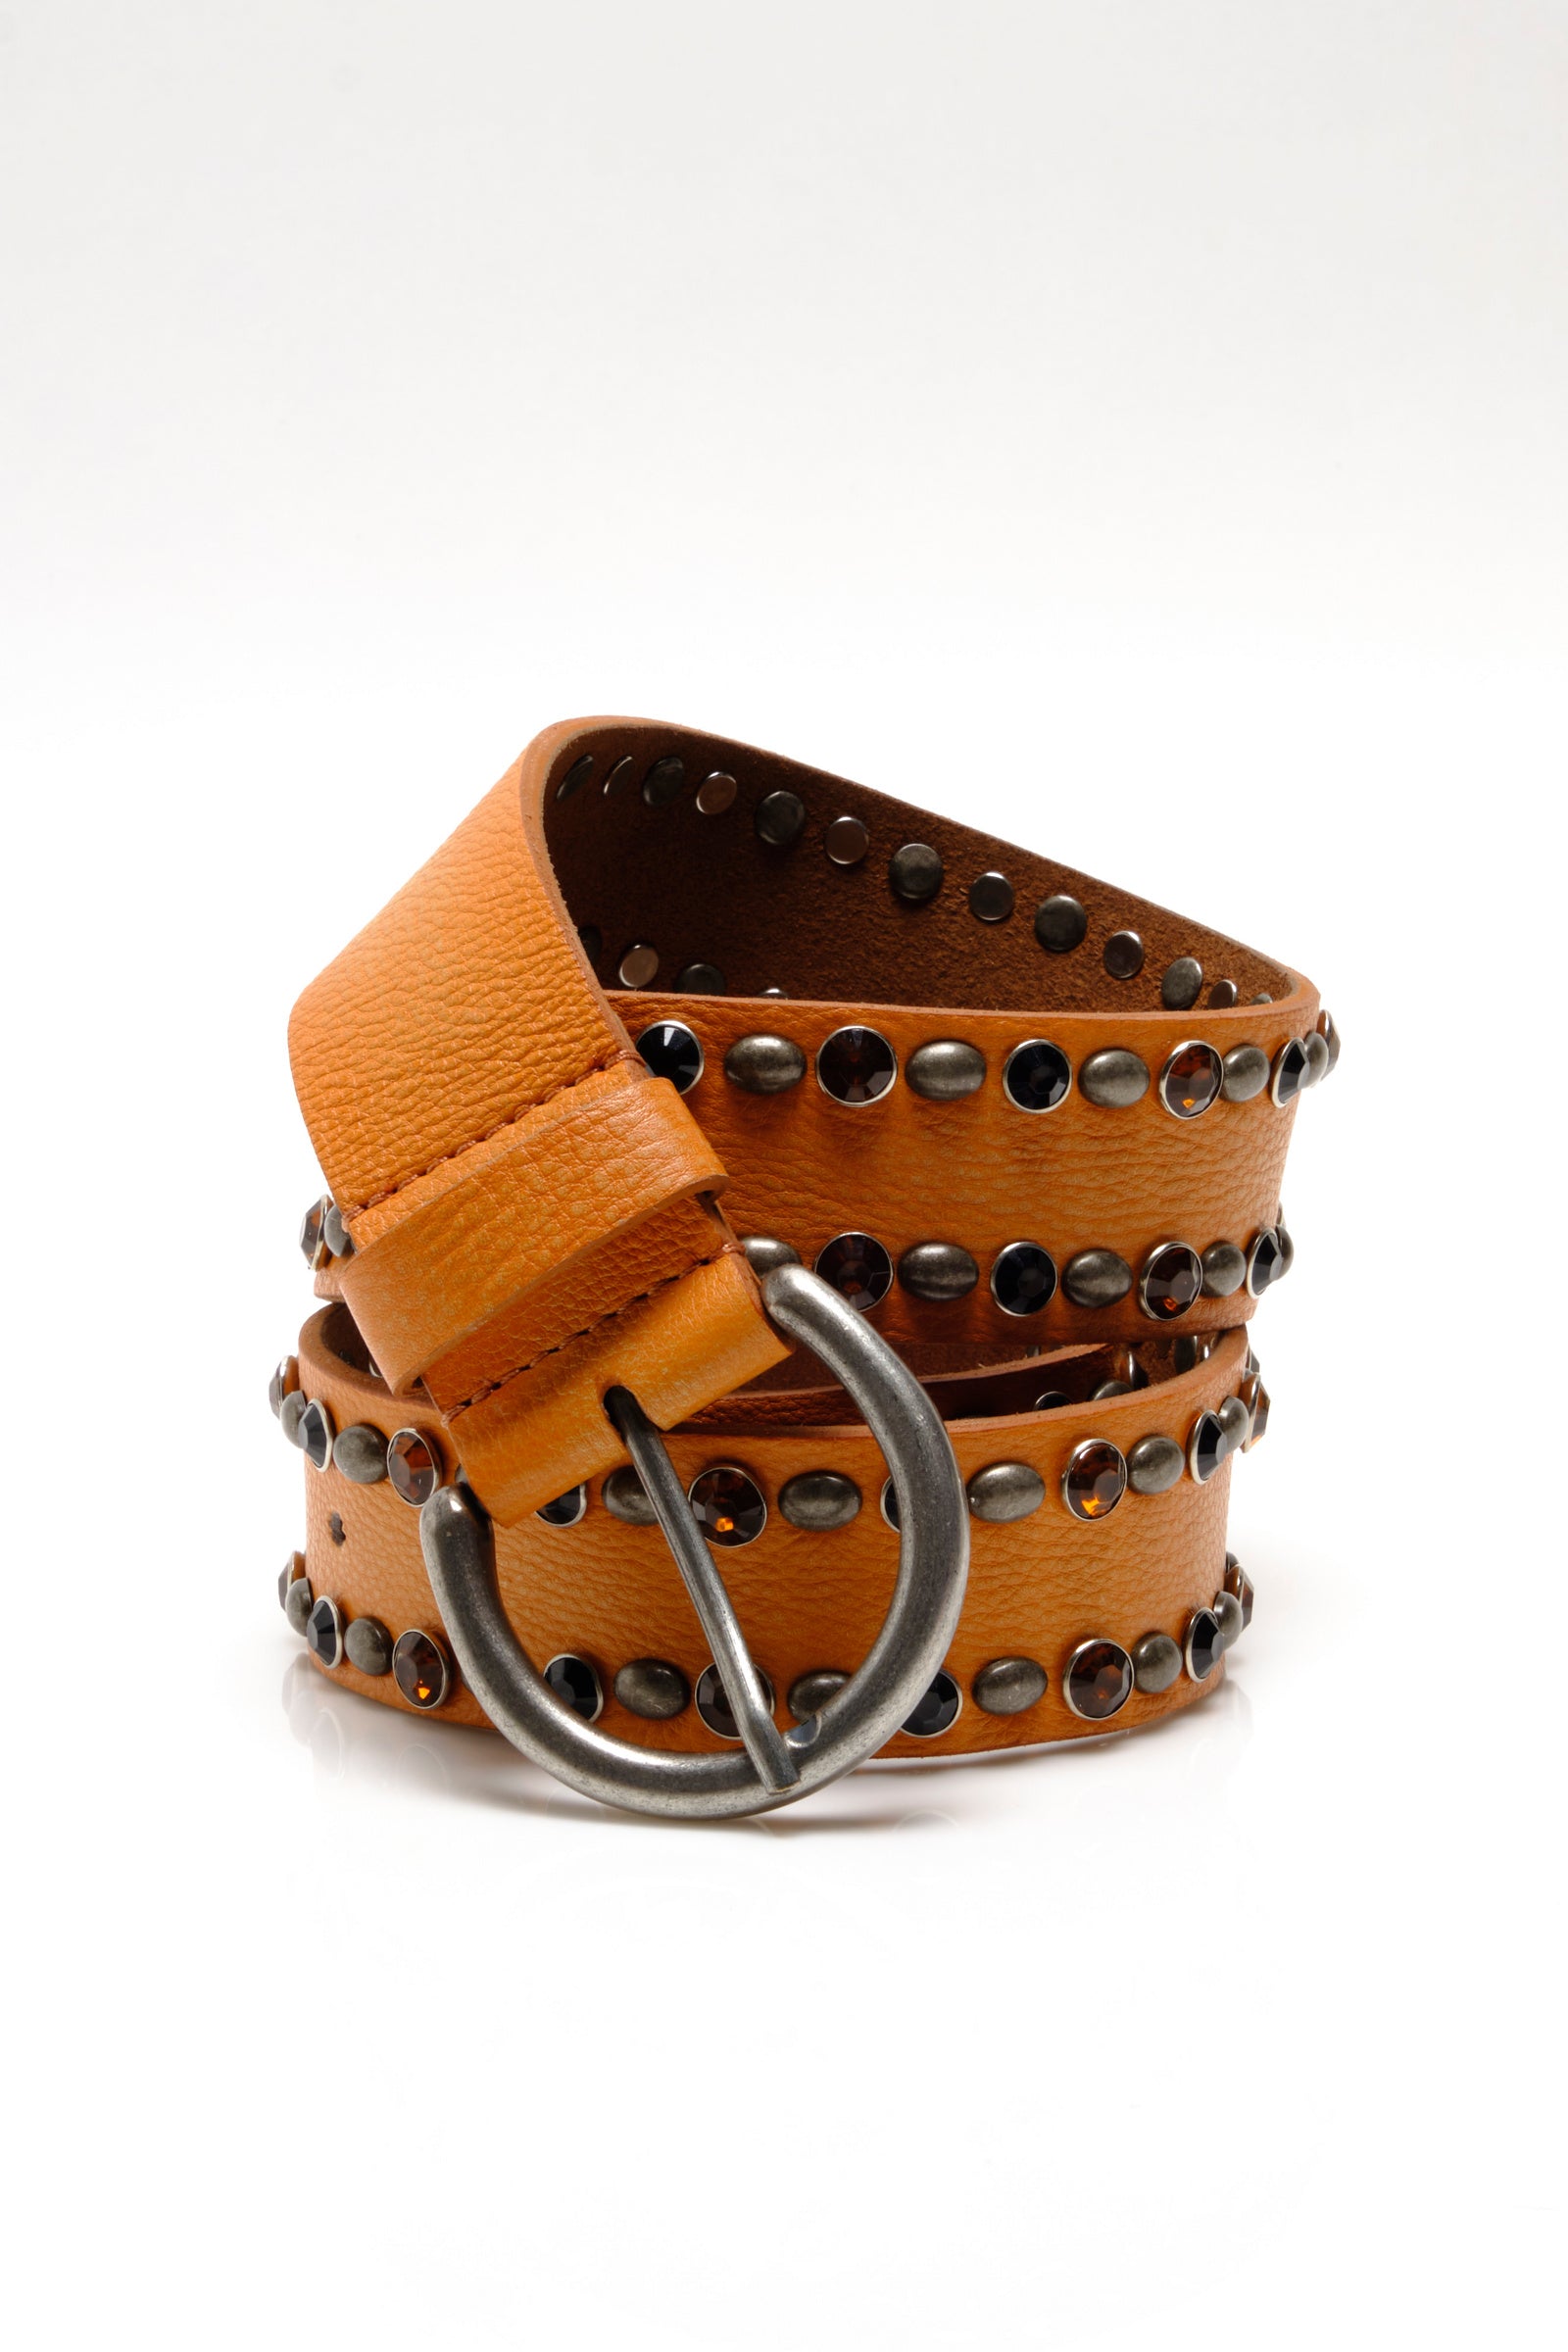 Free People Rockaway Studded Leather Belt - Orange S/M, Women's